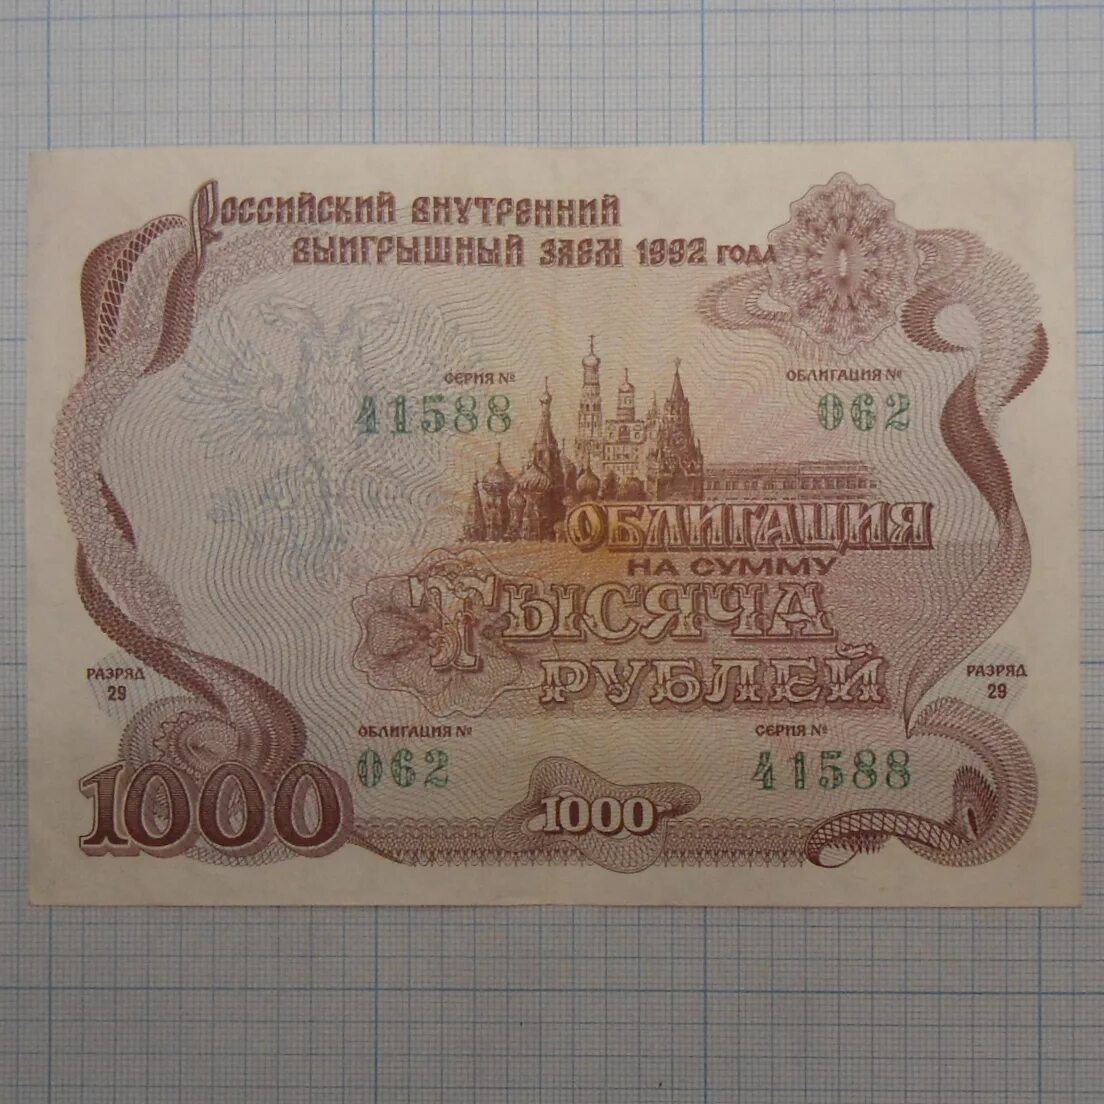 Займ 10000. Облигация 10000. Облигация 1000 рублей. Ценная бумага 1000 рублей. Обьигация на 1000₽ 1992 года.